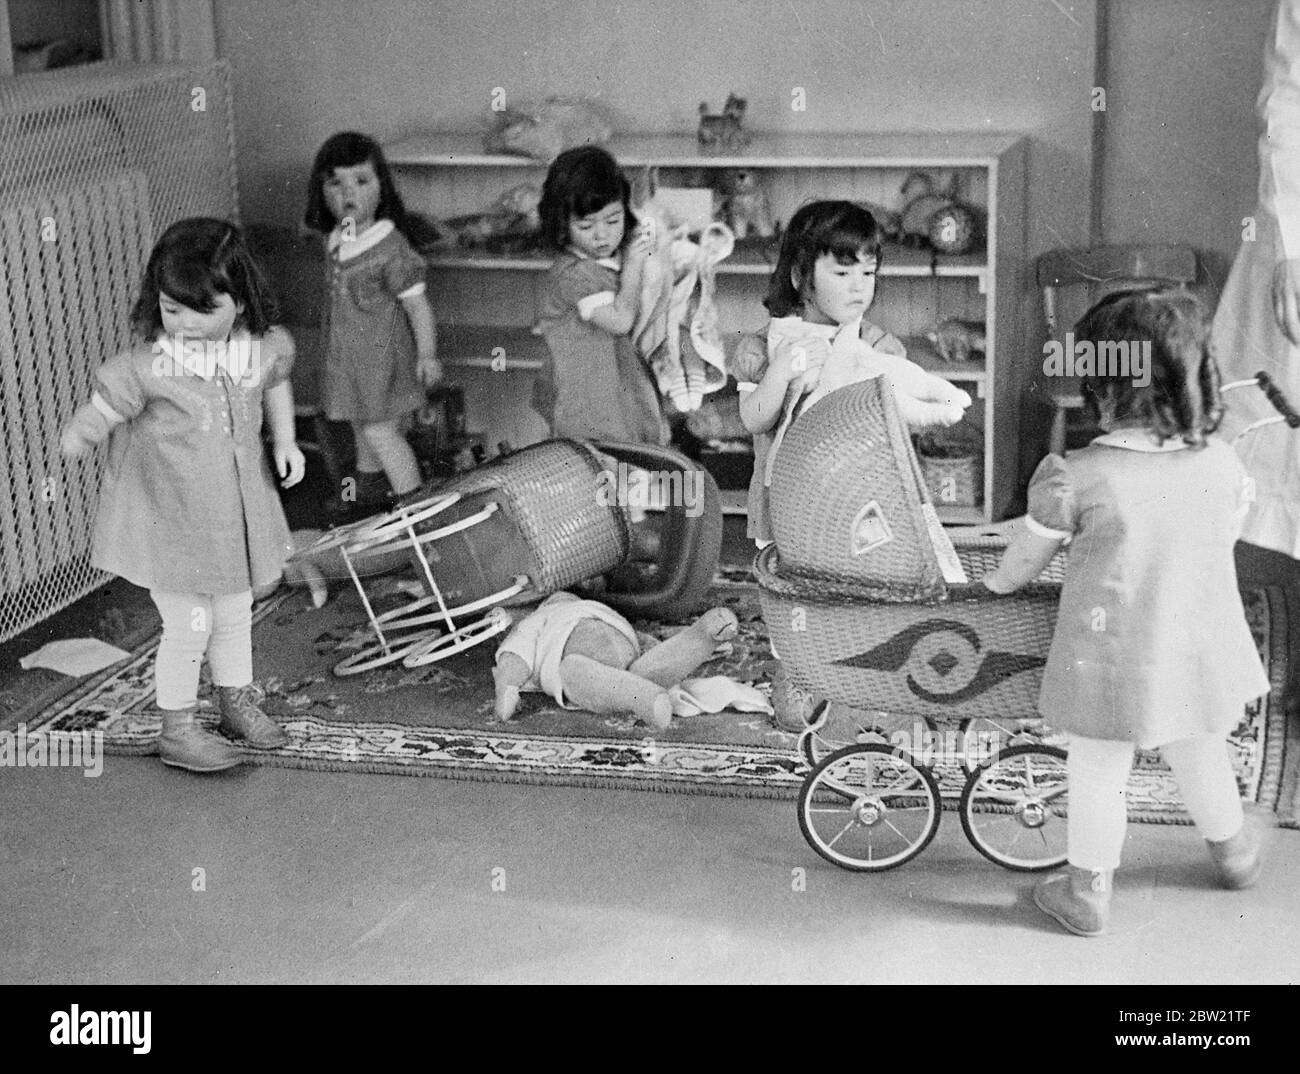 Dionnes con i loro prams e bambole, hanno un incidente a giocare. Foto spettacoli , da sinistra a destra, Cecile, Yvonne, Emilie, Marie e Annette. Foto Stock